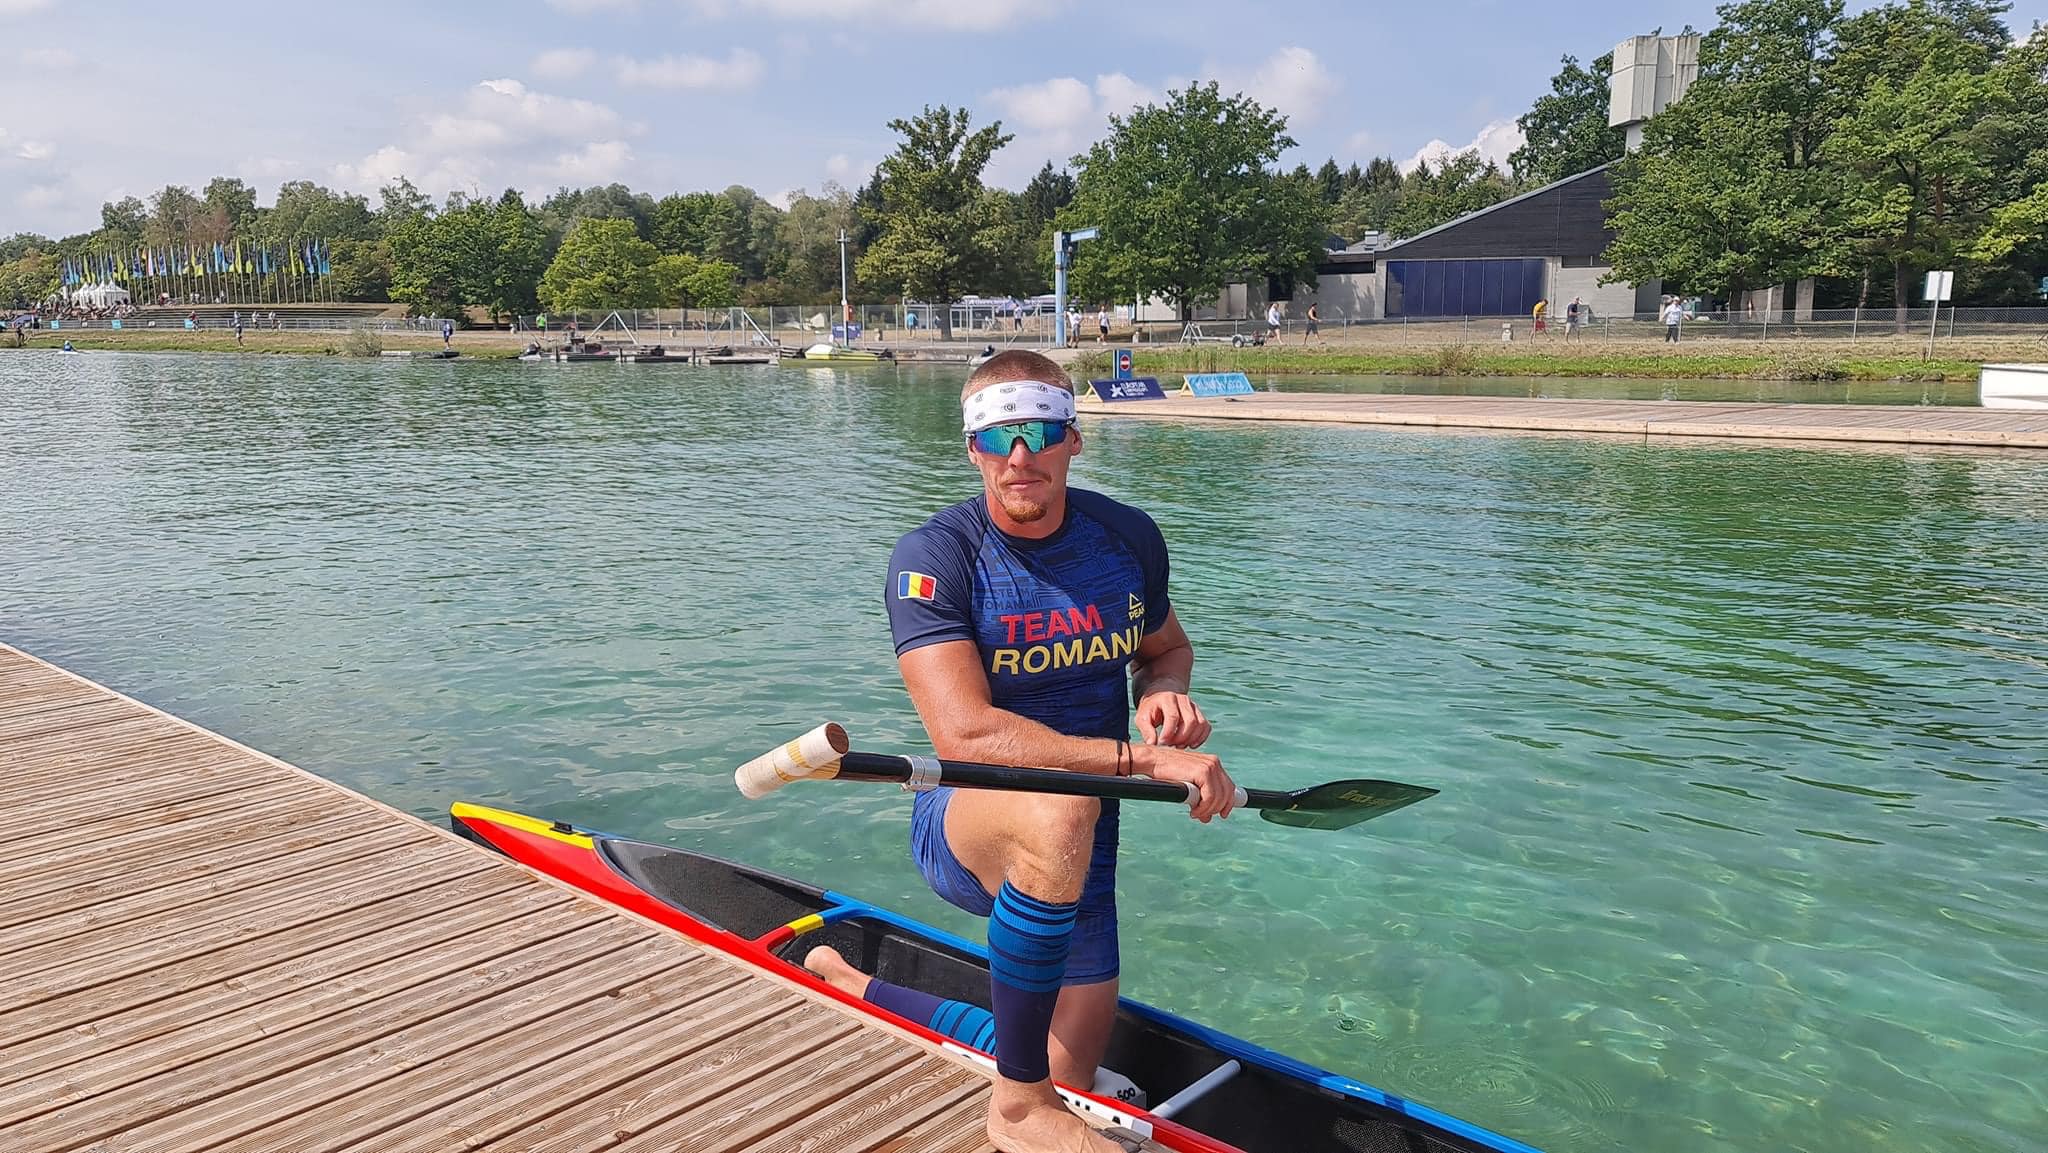 Cătălin Chirilă, medaliat cu aur la Europene în proba de canoe simplu pe 1.000 metri